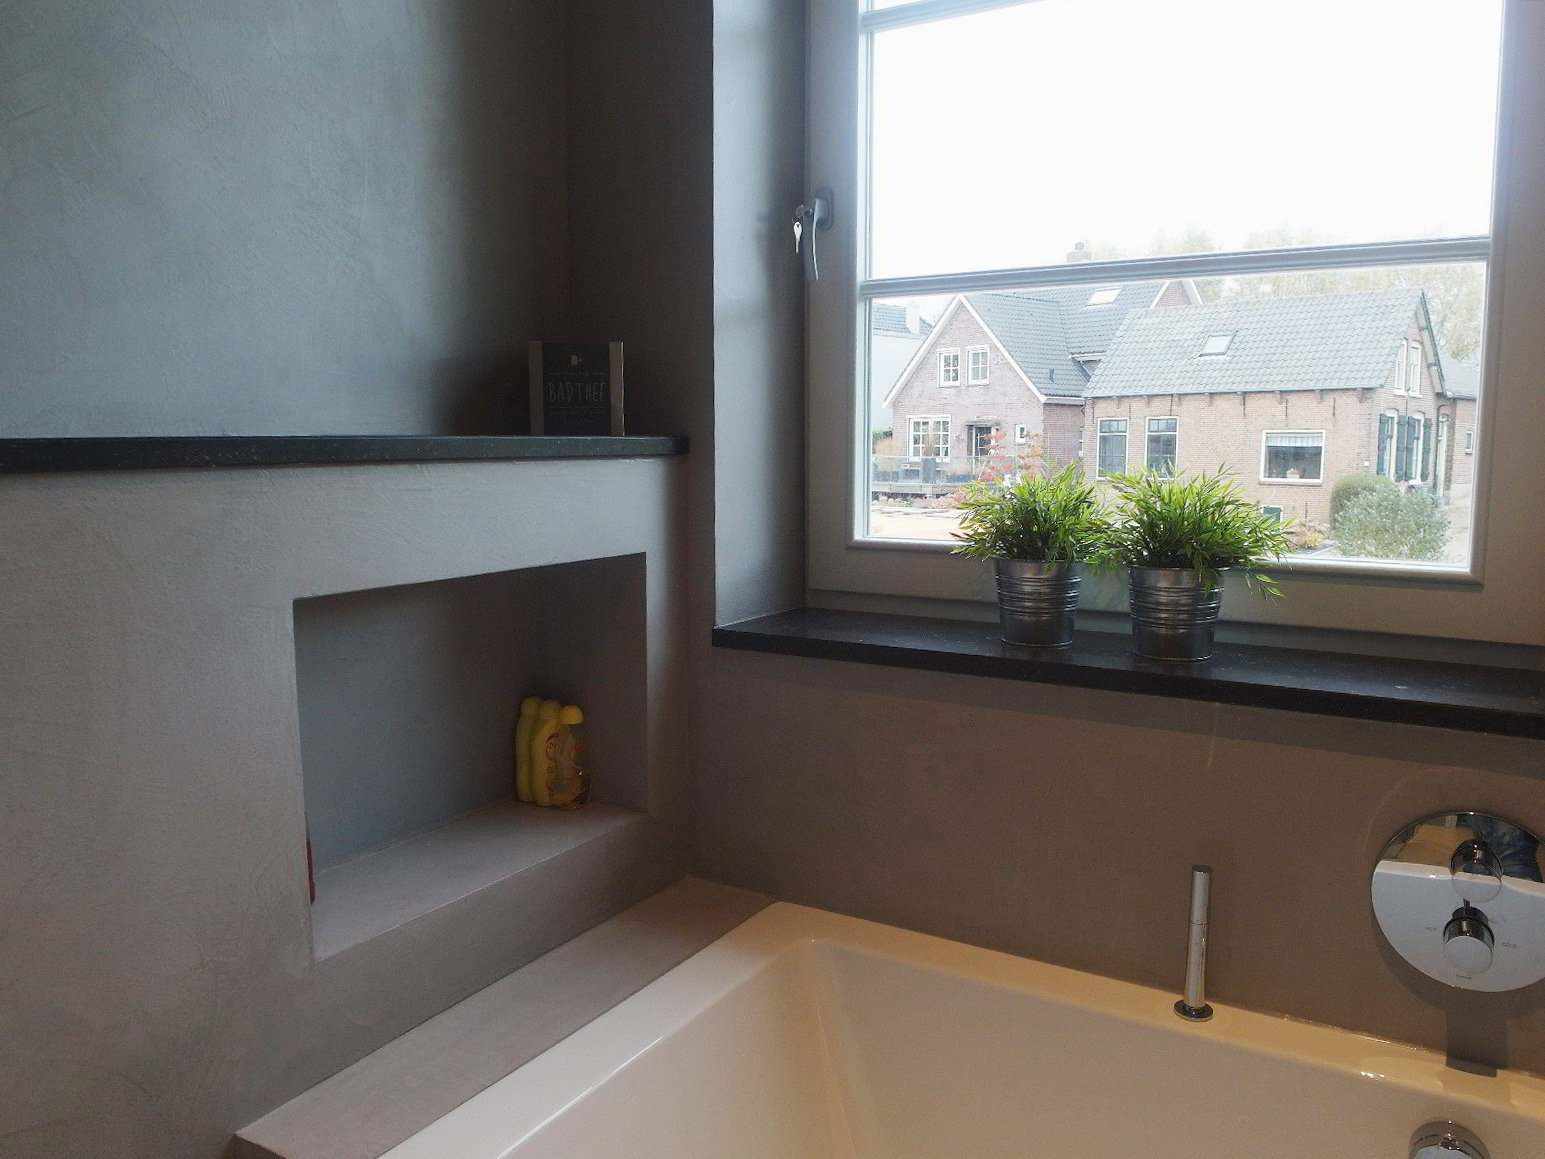 Microcimento na parede, no chão e no móvel de uma casa de banho na Holanda no projeto Decas.